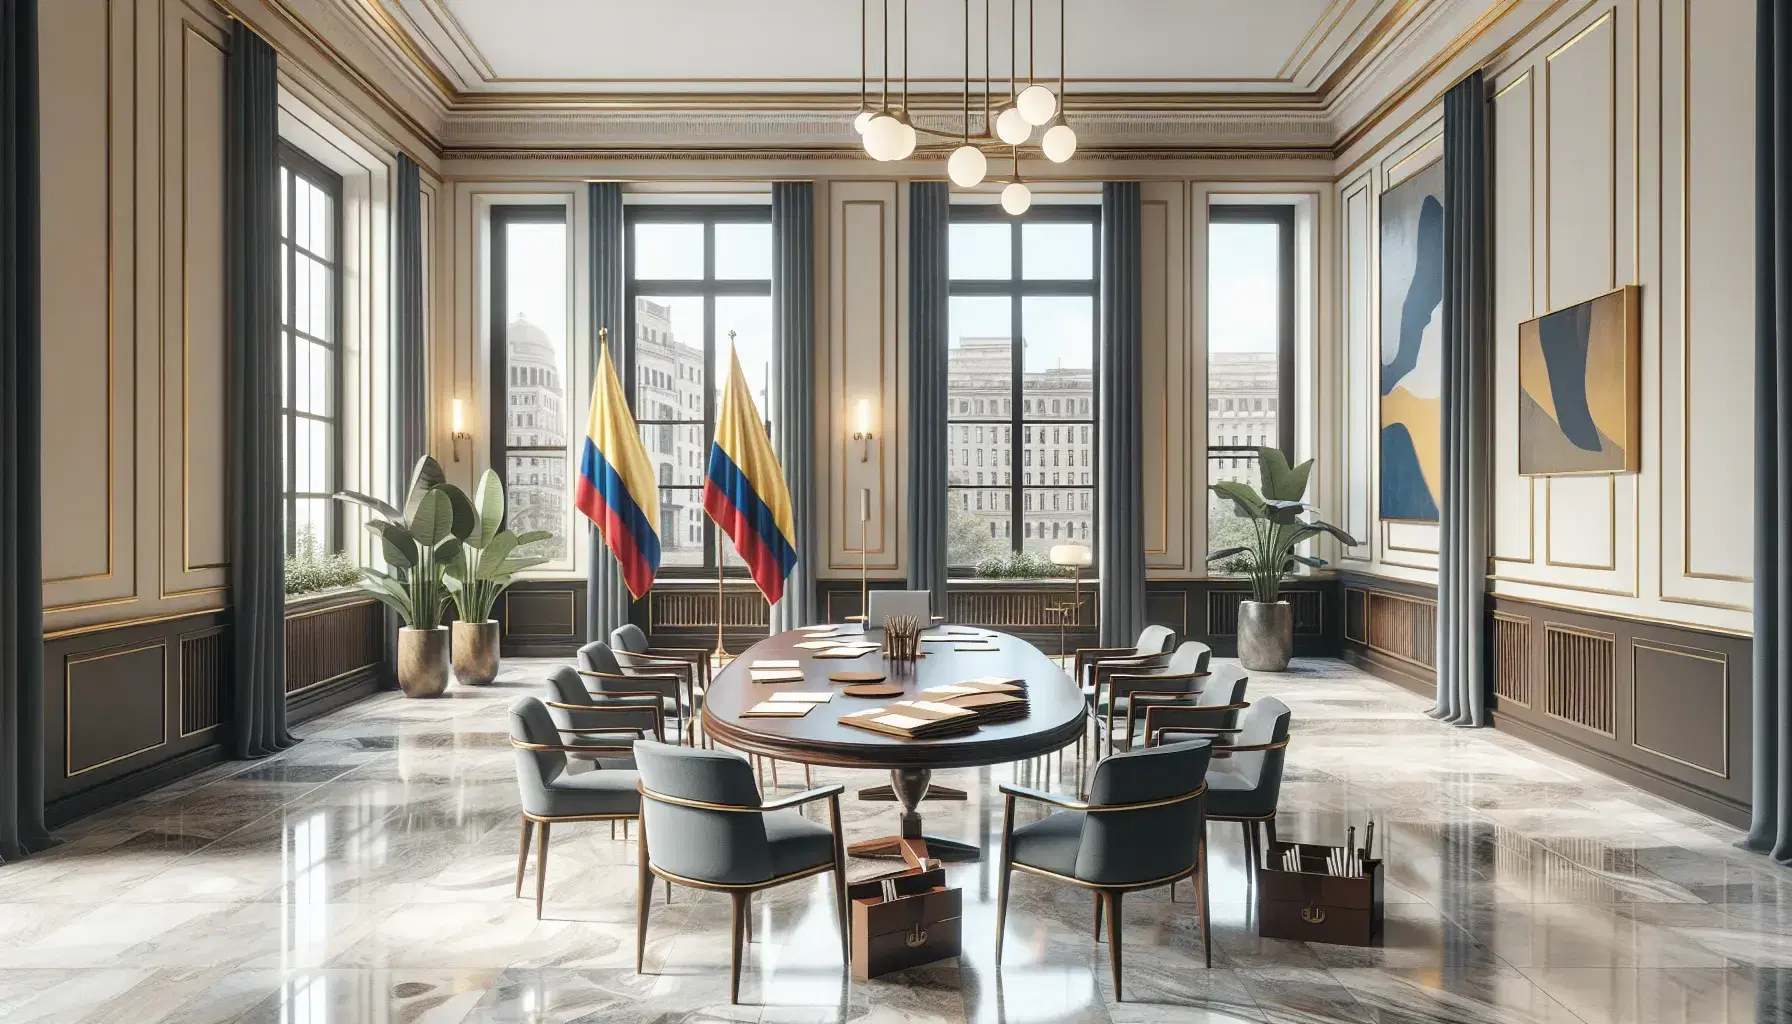 Sala de reuniones elegante con mesa ovalada de madera, sillas azules, bandera de Colombia, ventanas con vista urbana y detalles decorativos como planta y escultura abstracta.